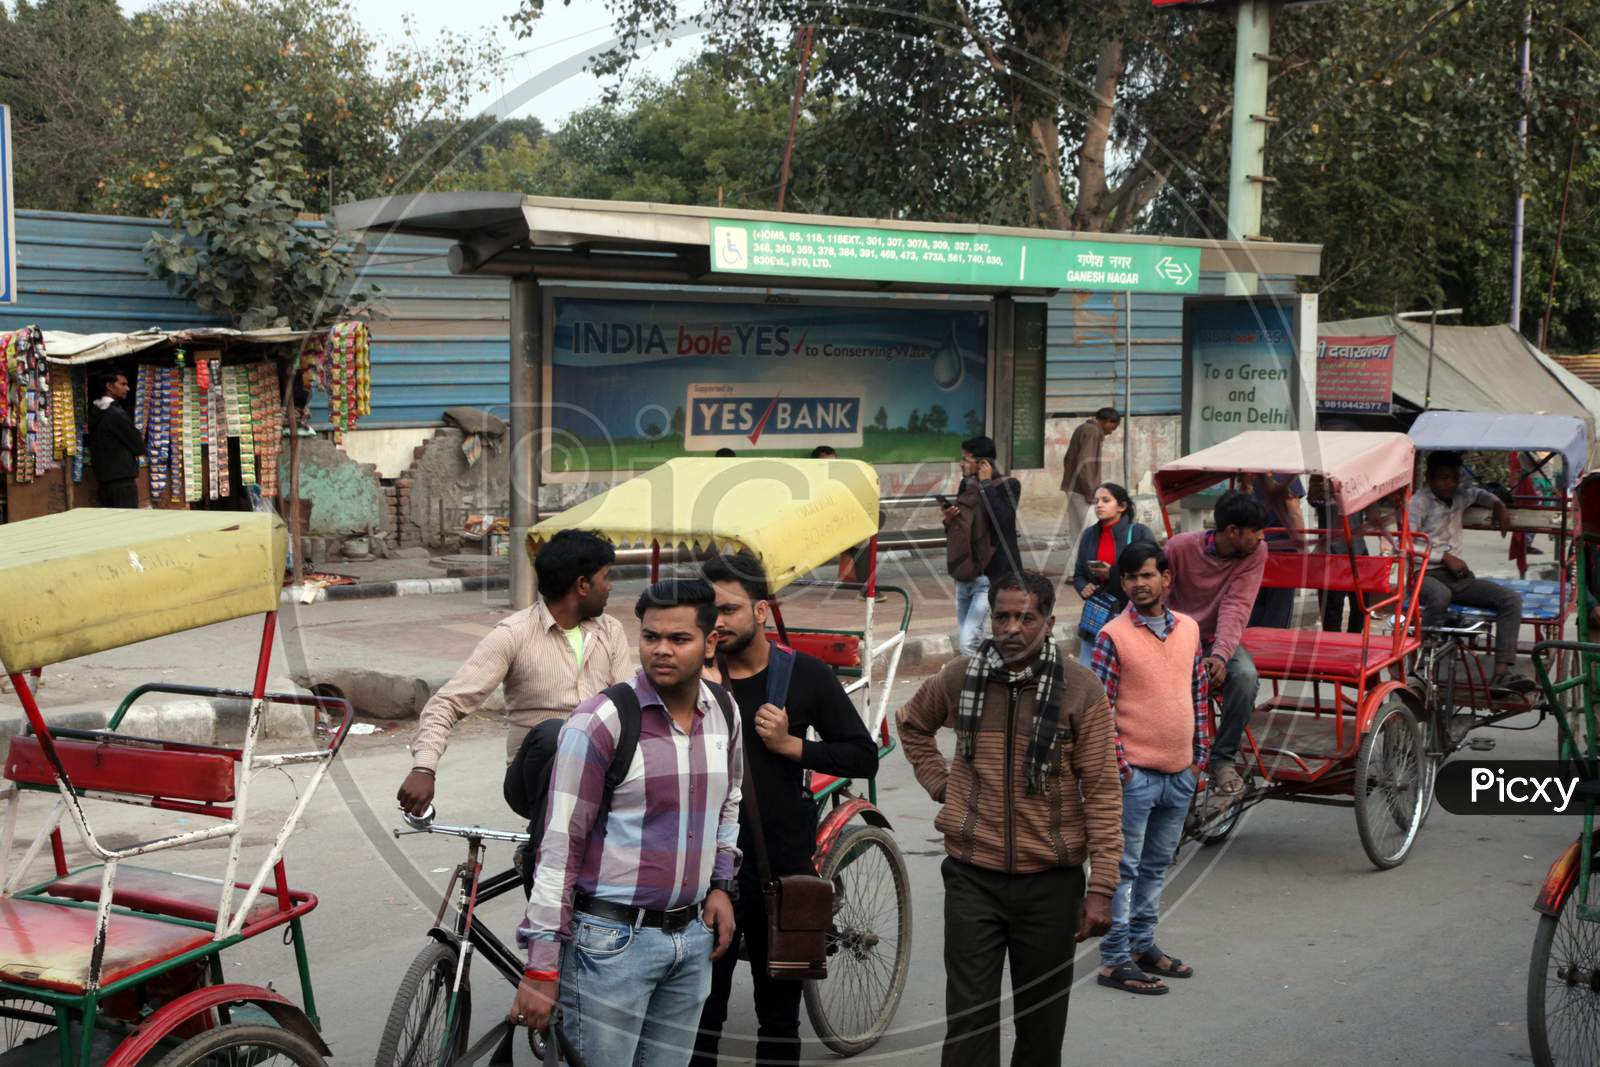 People with Rickshaws on a Single Lane Road